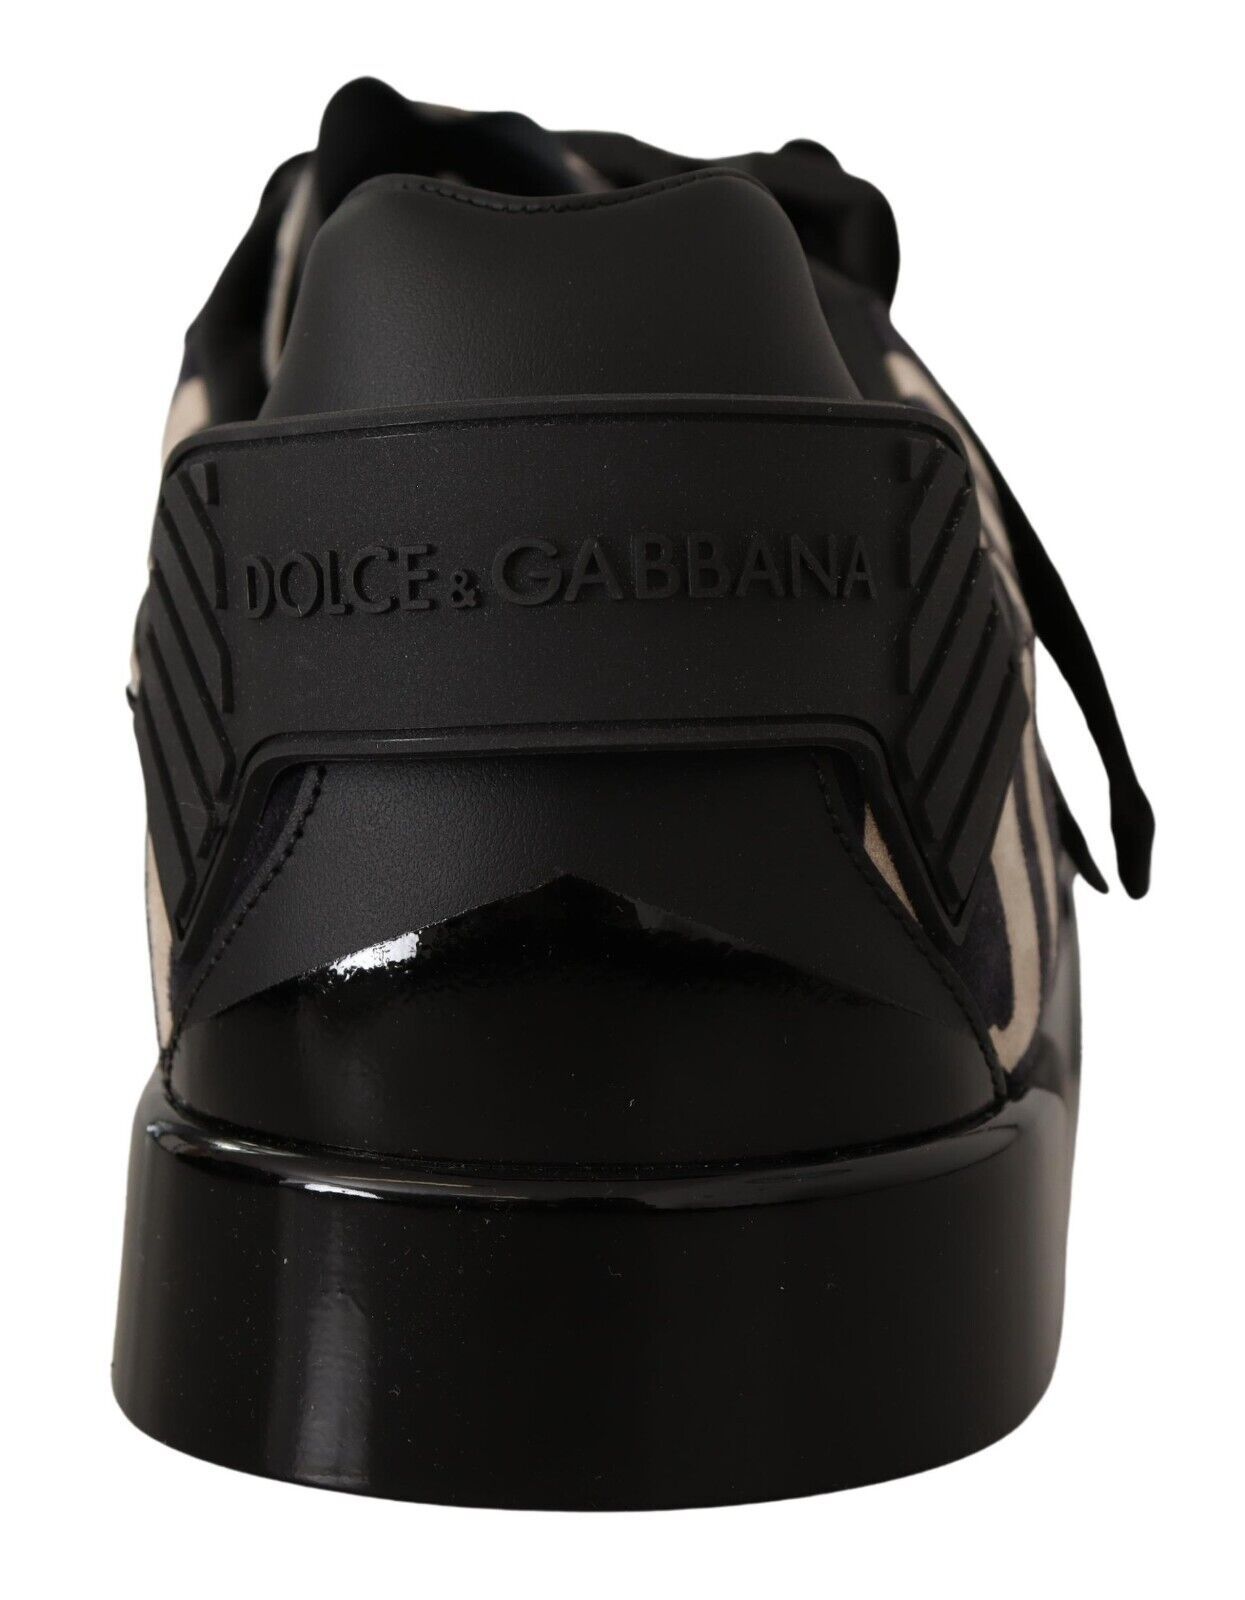 Dolce & Gabbana Schwarzweiß Zebra Wildleder Gummi -Turnschuhe Schuhe